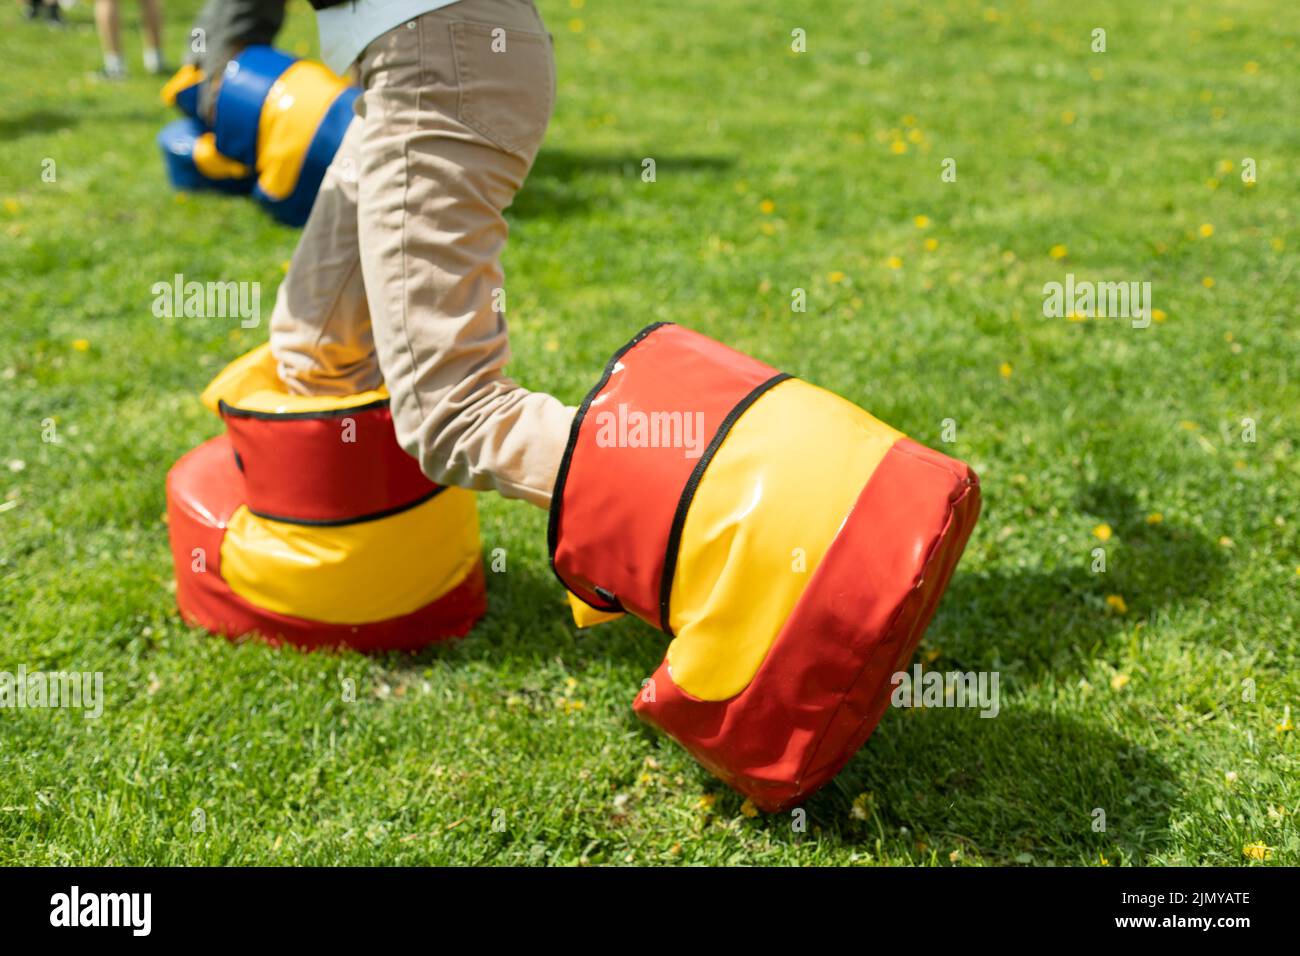 Lustige Schuhe für das Spiel. Spaß Urlaub des Kindes im Sommer. Unterhaltung auf grünem Gras. Spielen auf dem Rasen. Kind in unbequemen Schuhen. Stockfoto